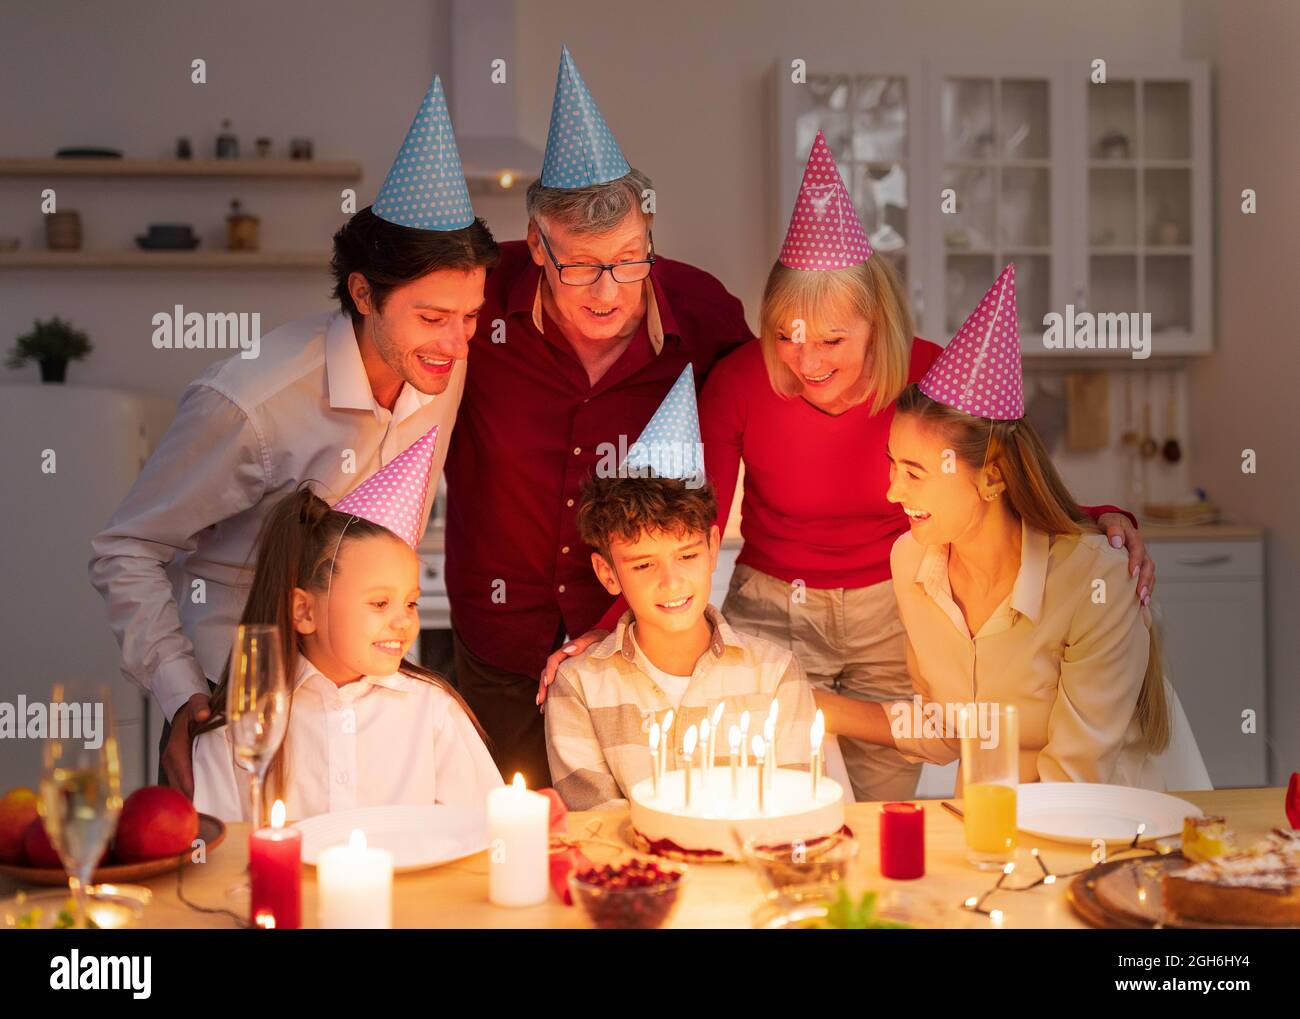 Ragazzo allegro che riceve torta di compleanno con candele brucianti dalla famiglia premurosa, celebrando le vacanze al chiuso di notte Foto Stock